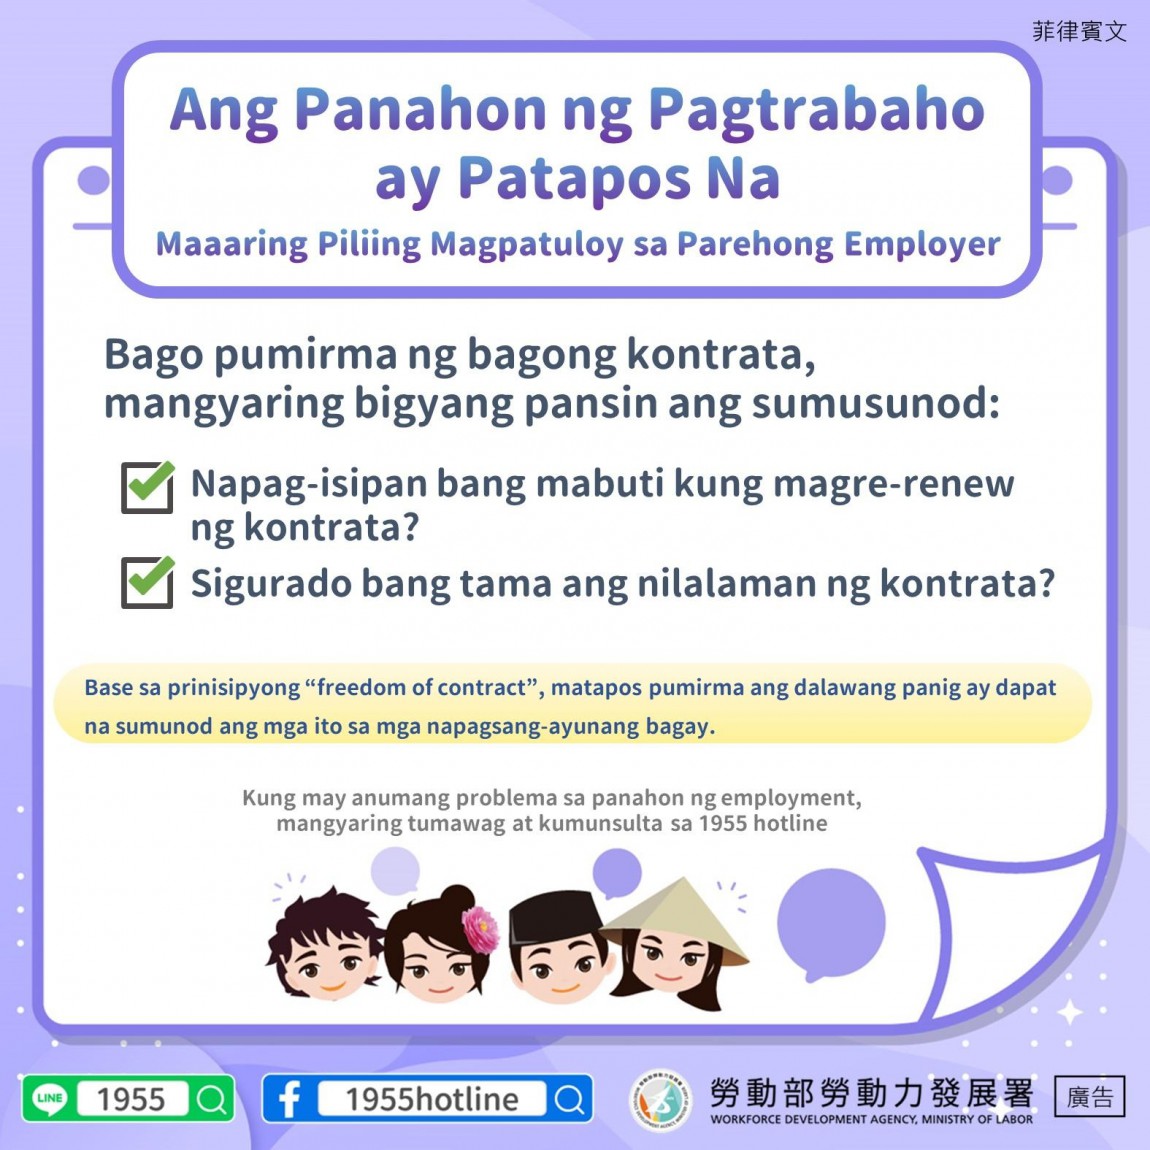 聘僱期間屆滿選擇由同一雇主續聘應遵守約定事項-菲律賓文